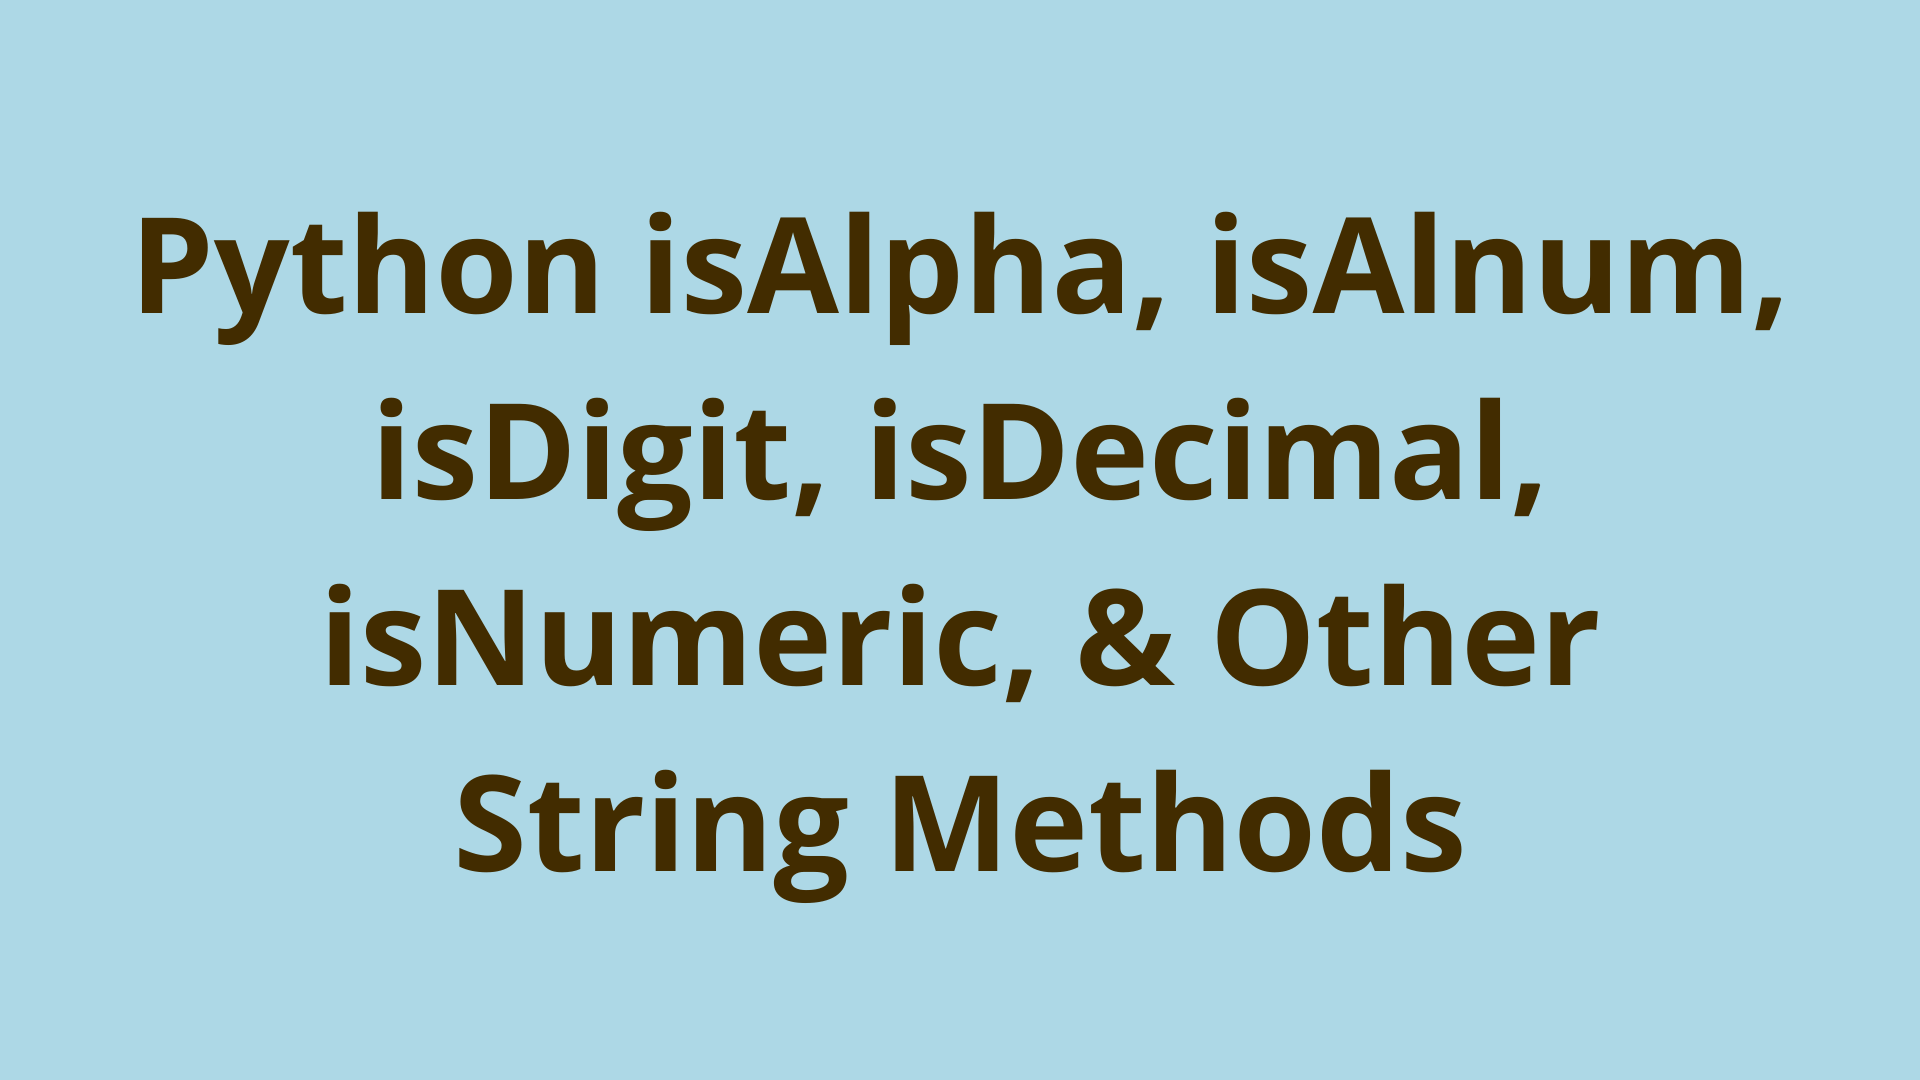 Image of Python isAlpha, isAlnum, isDigit, isDecimal, isNumeric, & Other String Methods